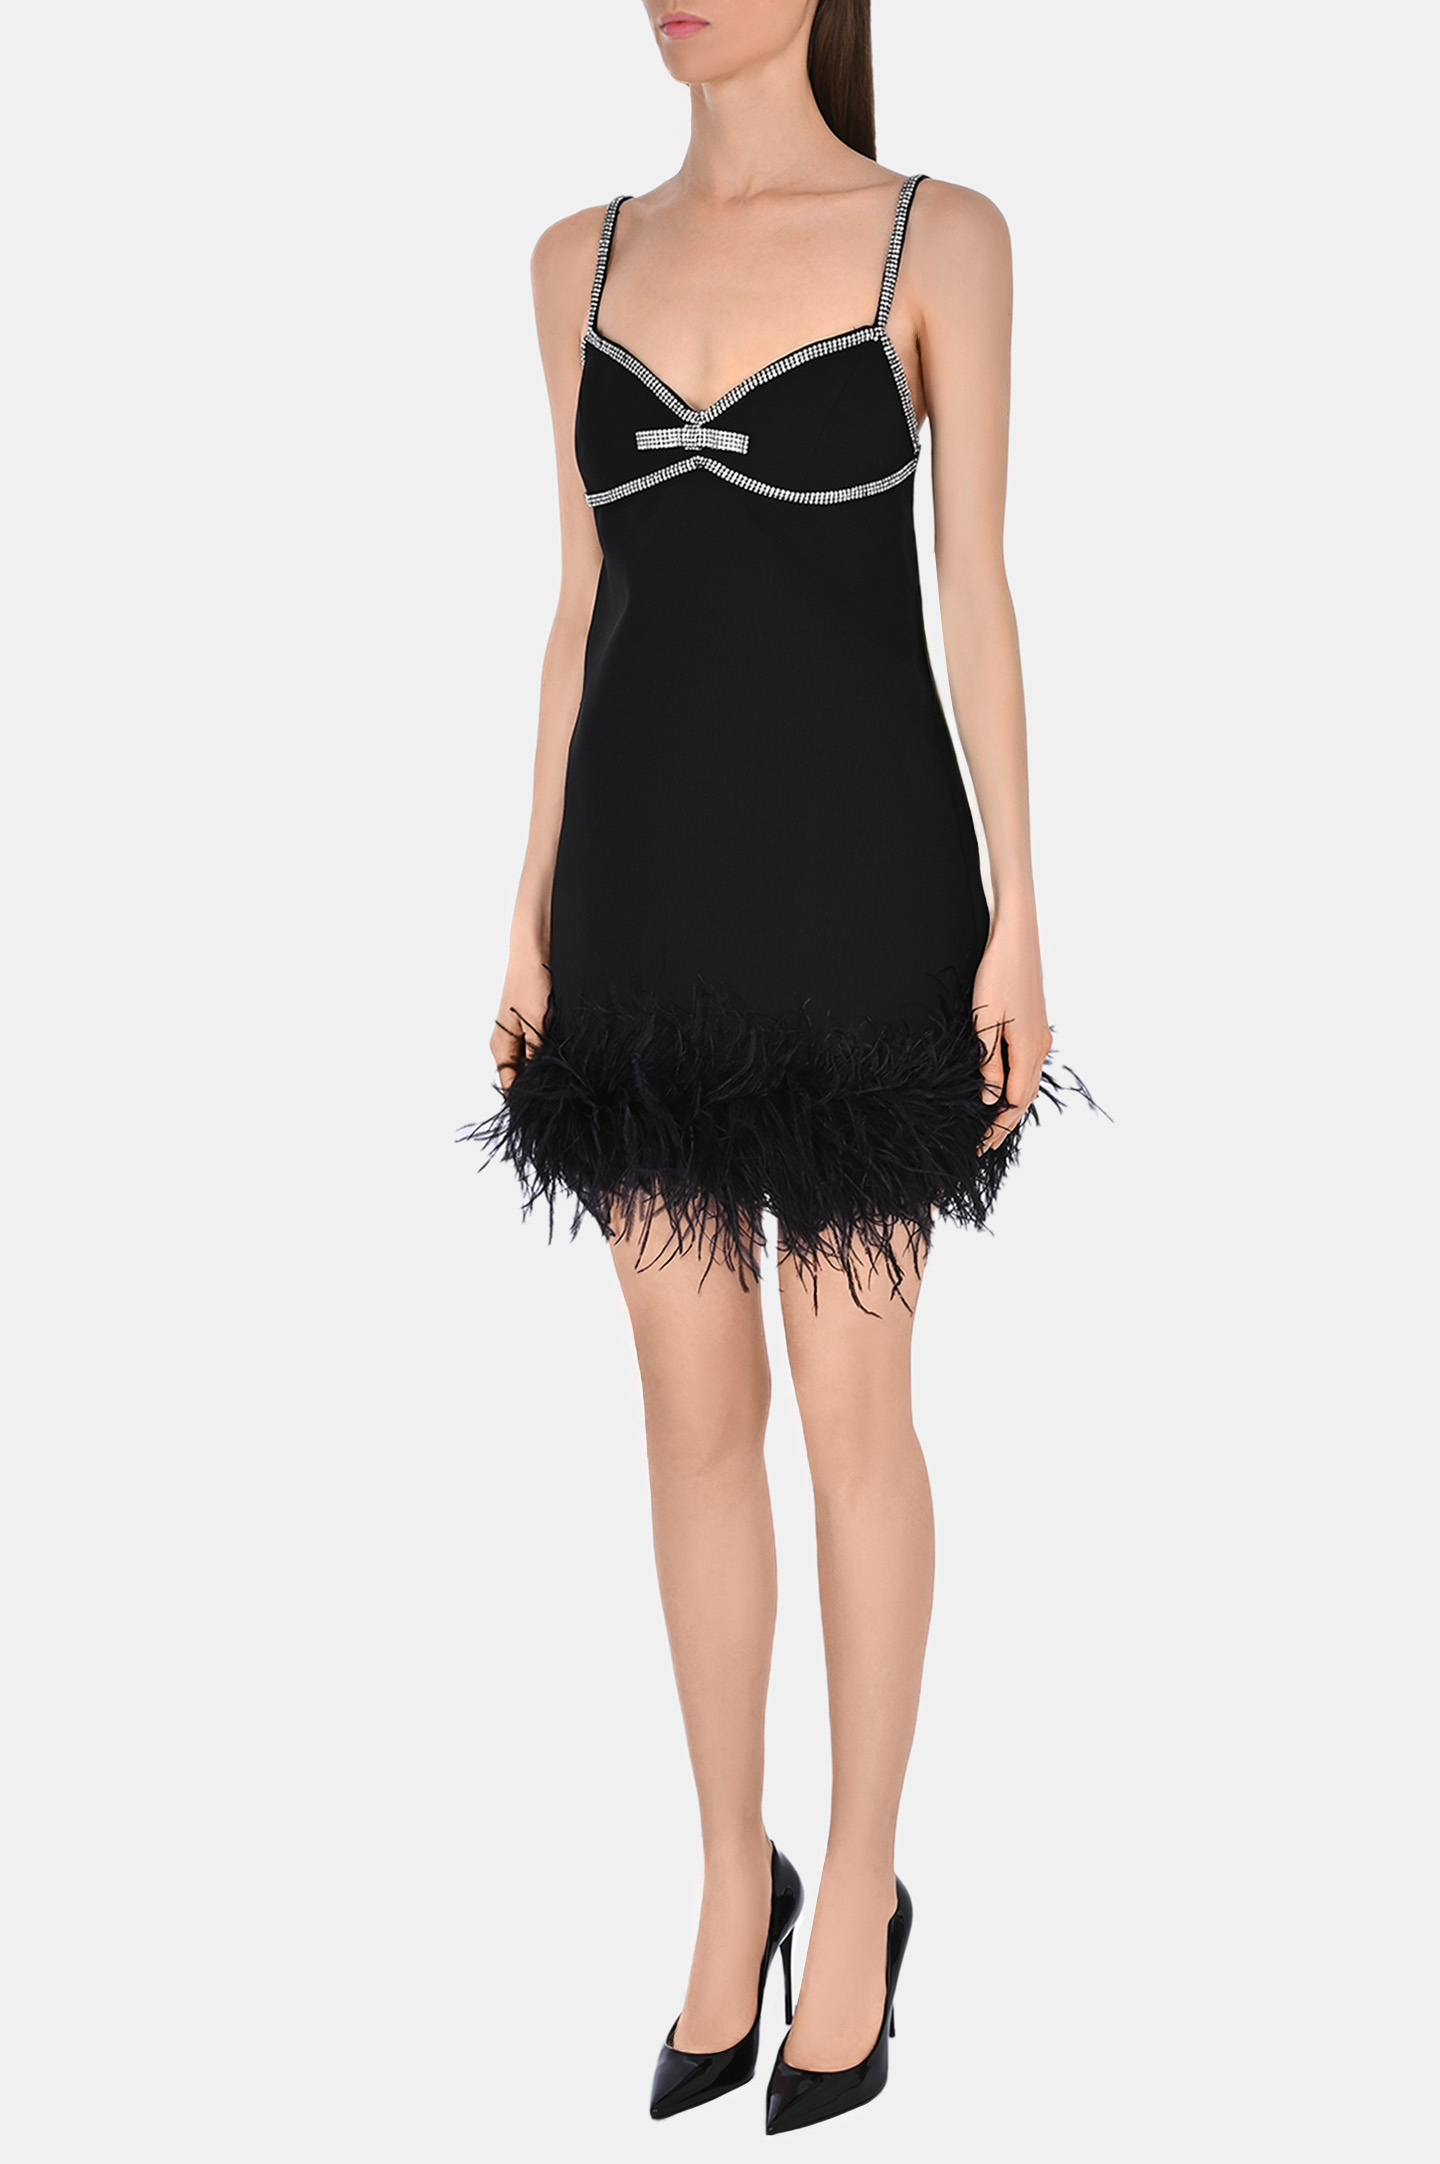 Платье SELF PORTRAIT RS24146SB, цвет: Черный, Женский